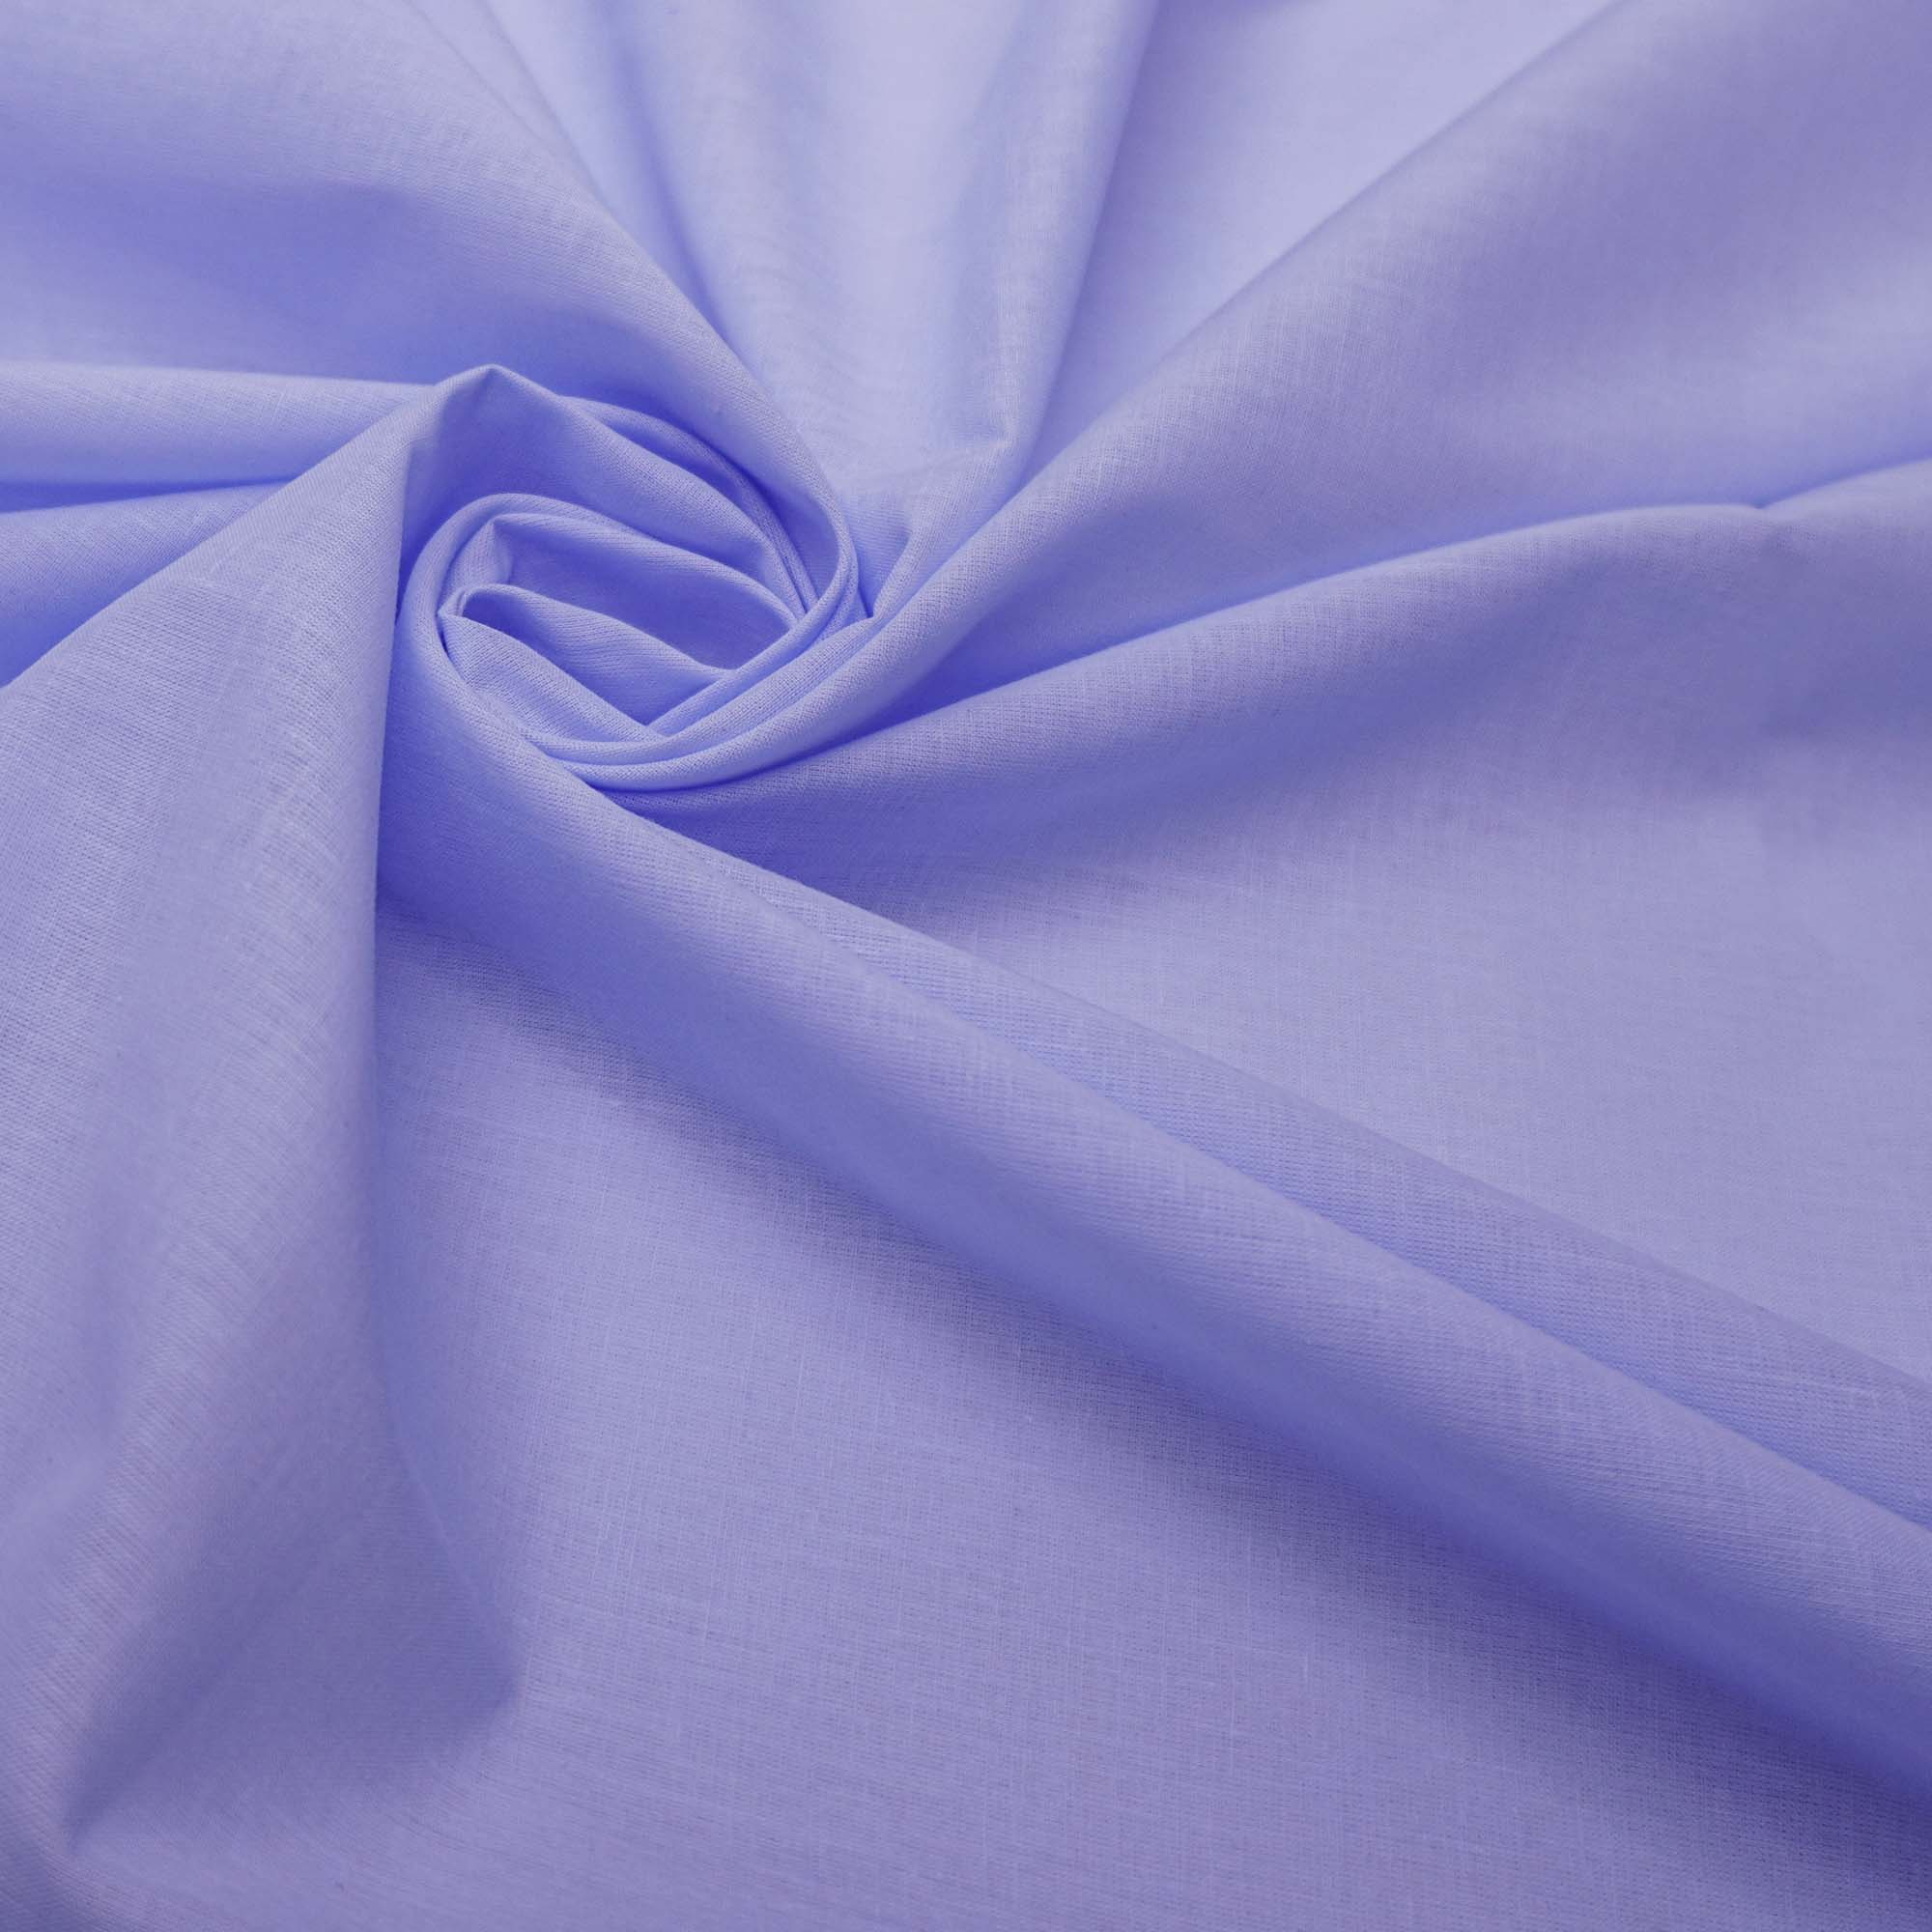 Tecido cambraia de algodão azul serenity claro